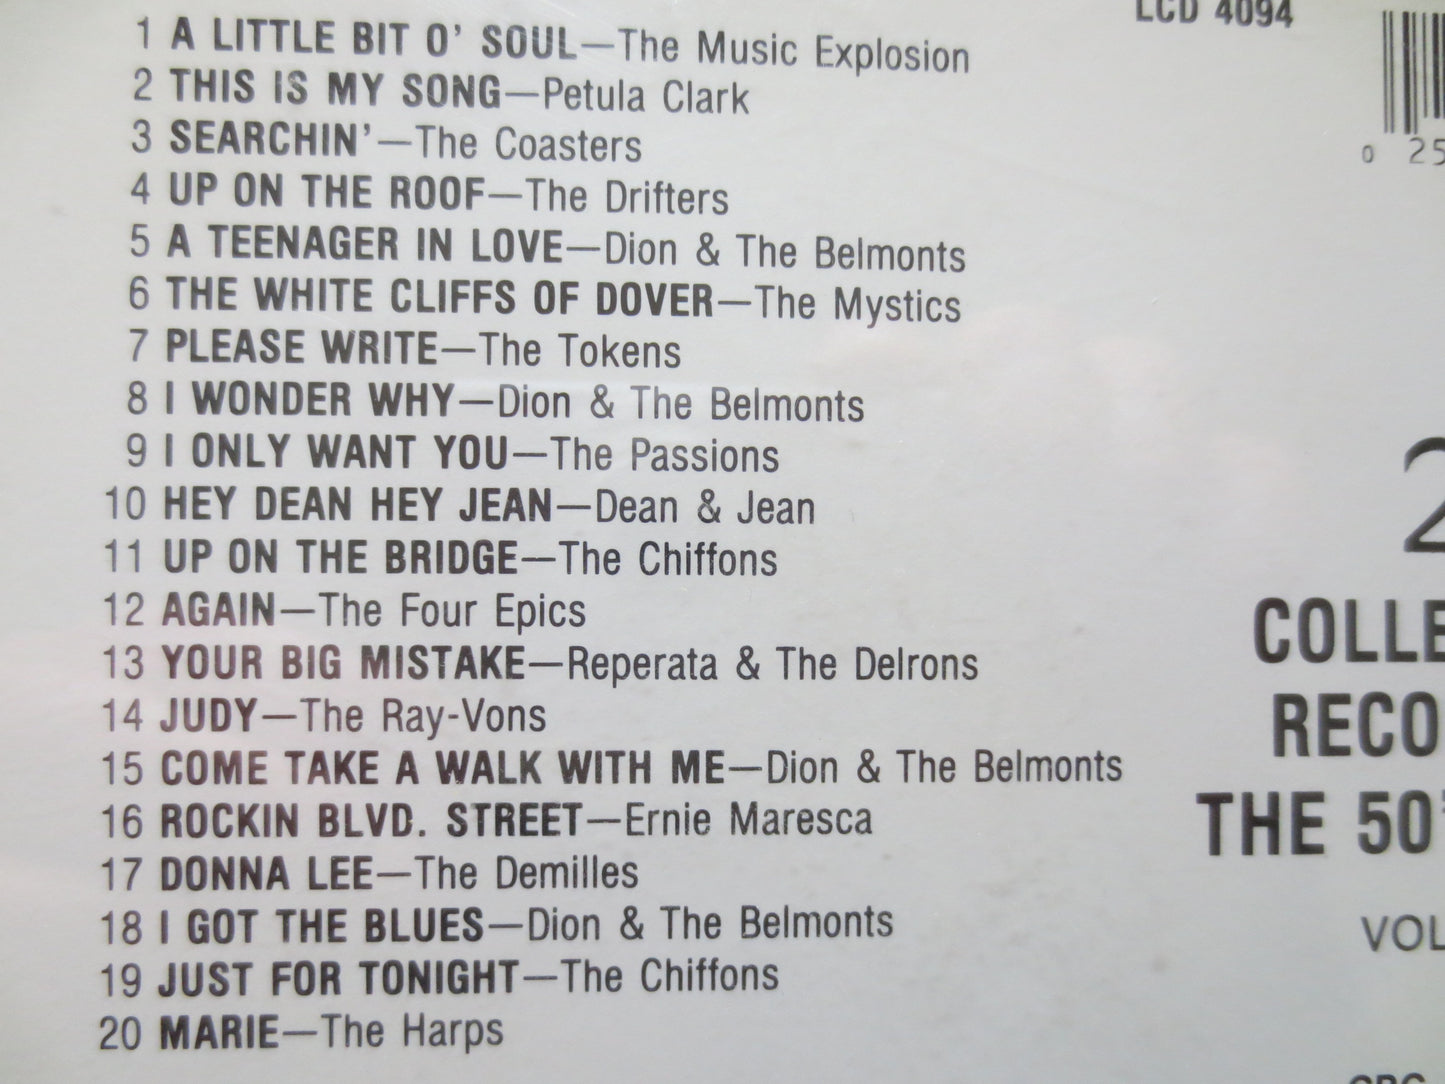 20 COLLECTORS Record, Rock Cd, Rock Compact Disc, Rock Album, Cd Rock, Classic Rock Cd, Music Cd, 1989 Compact Discs